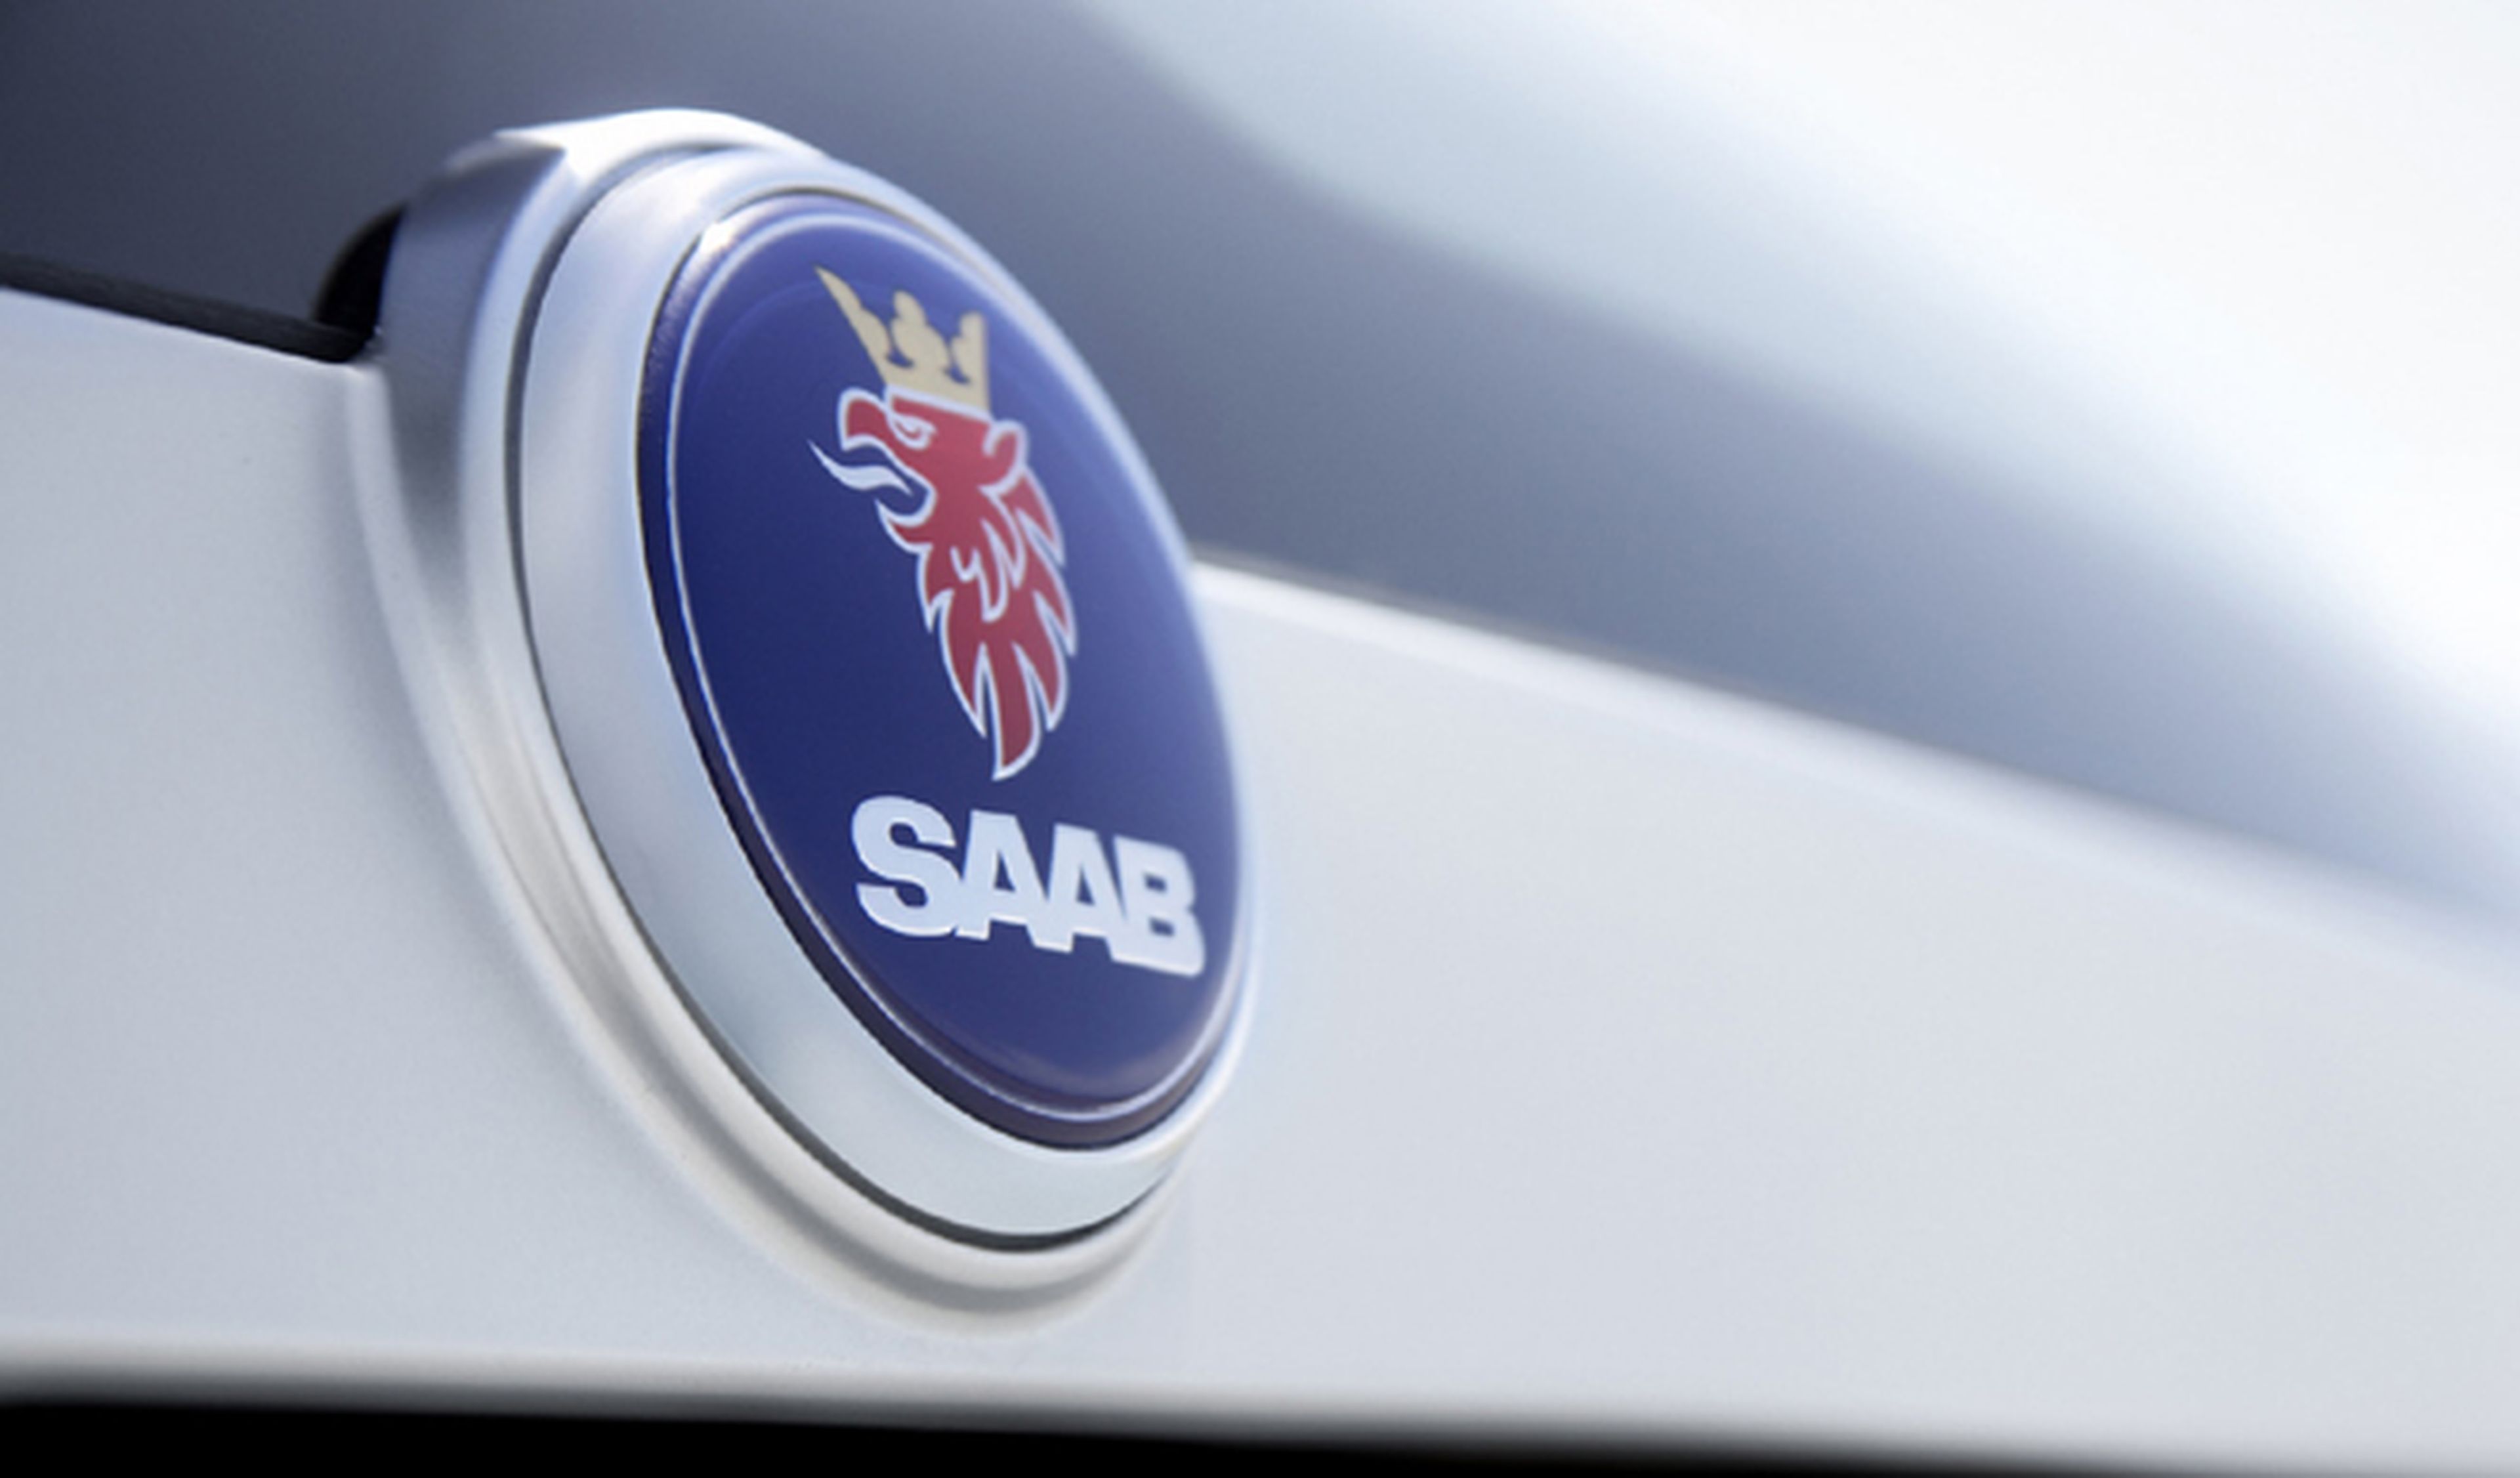 NEVS no podrá usar el nombre de Saab en futuros modelos